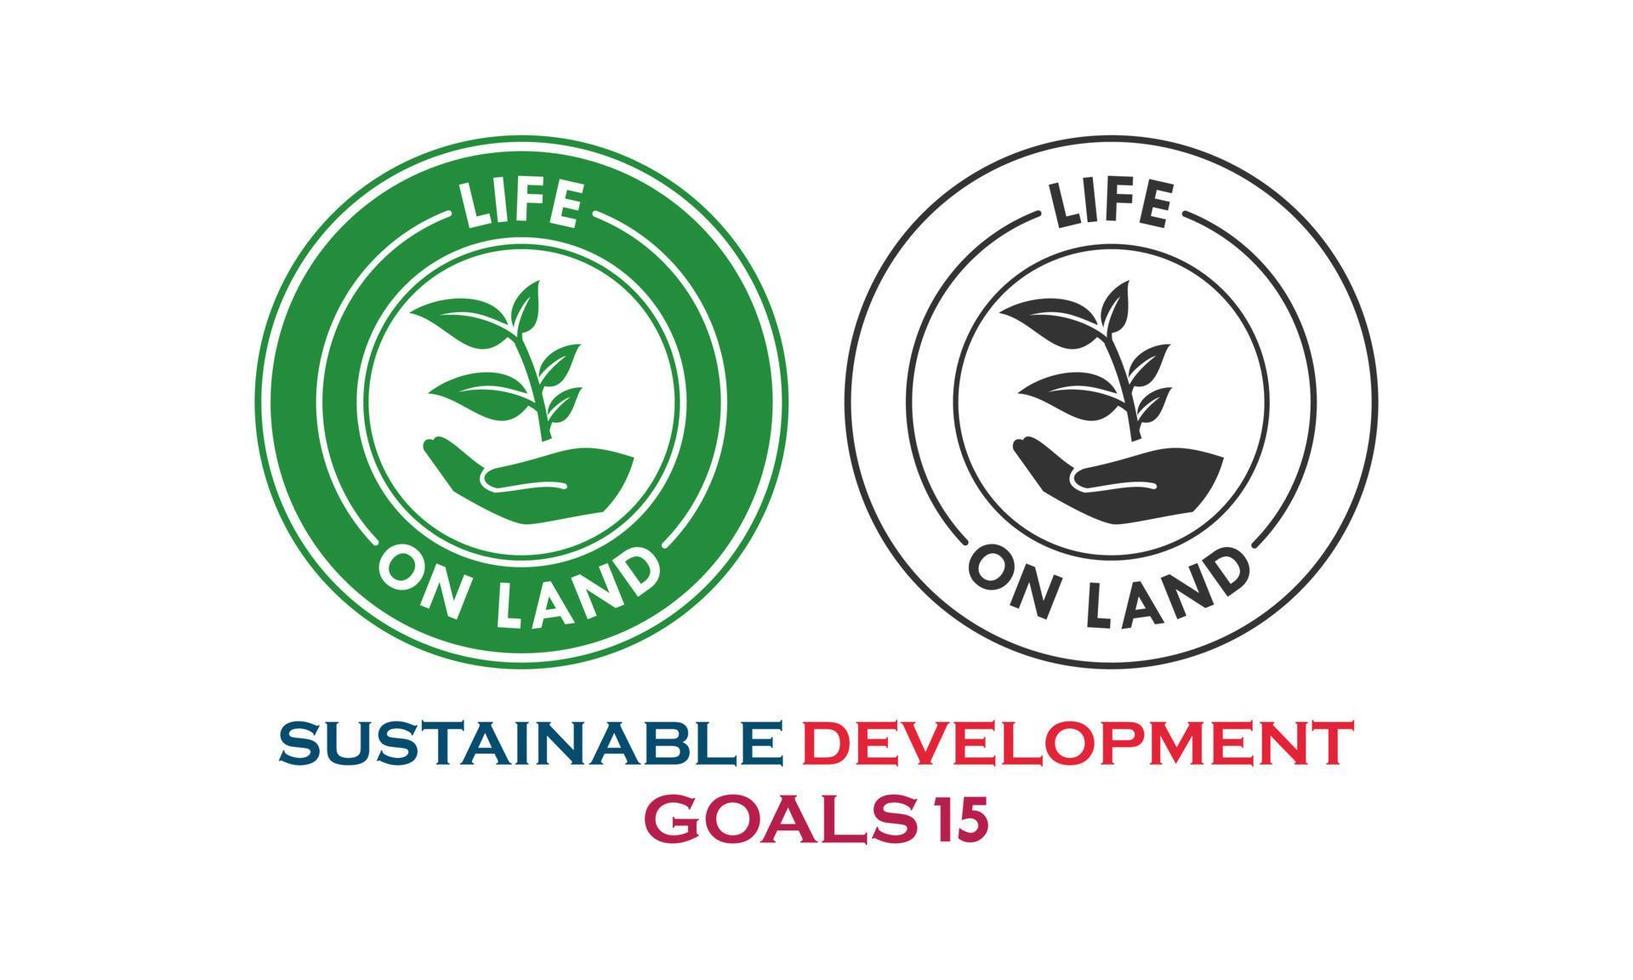 obiettivi di sviluppo sostenibile, elemento vita sulla terra vettore